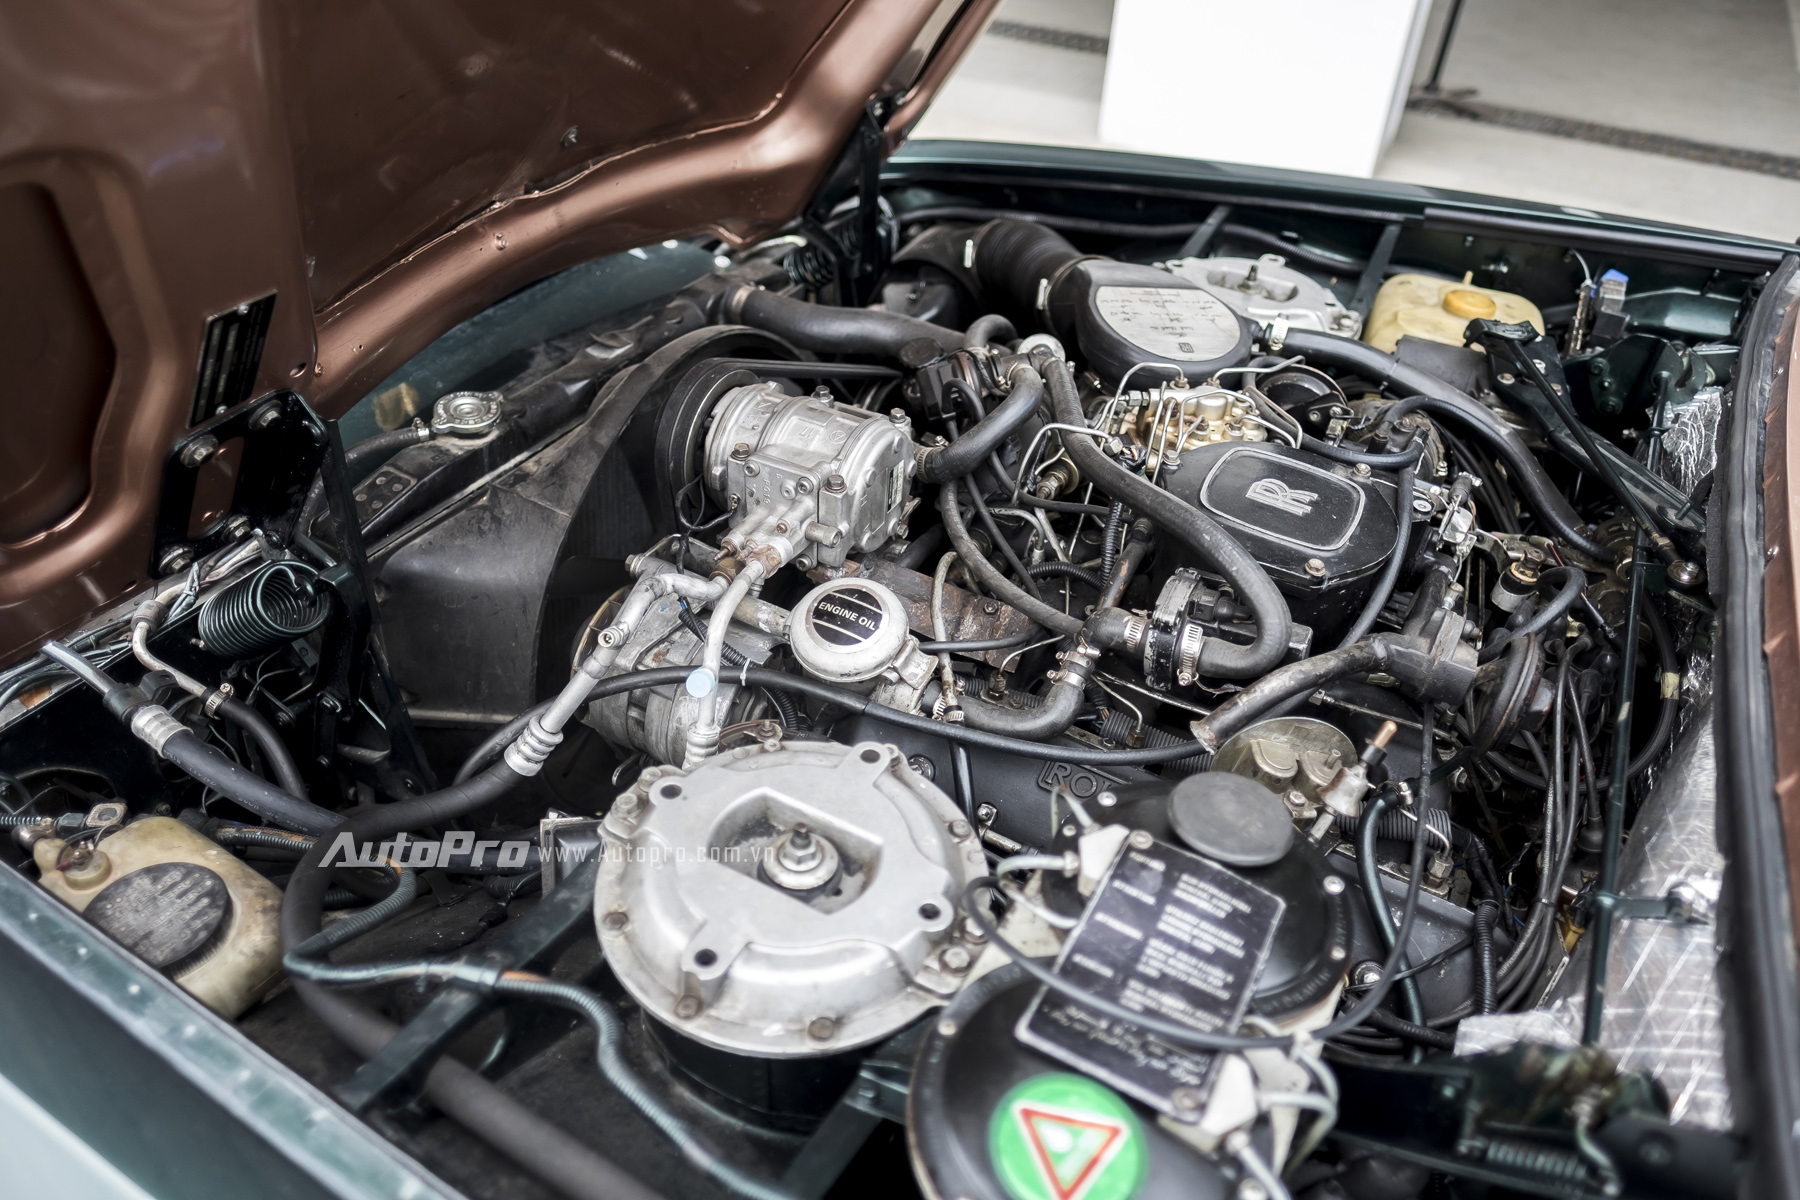 
Khó khăn nhất khi phục hồi lại chiếc Rolls-Royce Silver Spirit 1982 chính là ở khối động cơ hơn 30 tuổi này. Nhiều chi tiết của khối động cơ V8 dung tích 6.75L đã không còn sản xuất từ rất lâu. Và để có thể hoàn thành chiếc xe, các chuyên gia kỹ thuật của xưởng dịch vụ Rolls-Royce Motor Cars Hanoi đã phải kỳ công tìm kiếm từ chính hãng nước ngoài hoặc sửa chữa lại những chi tiết quá khó tìm.
